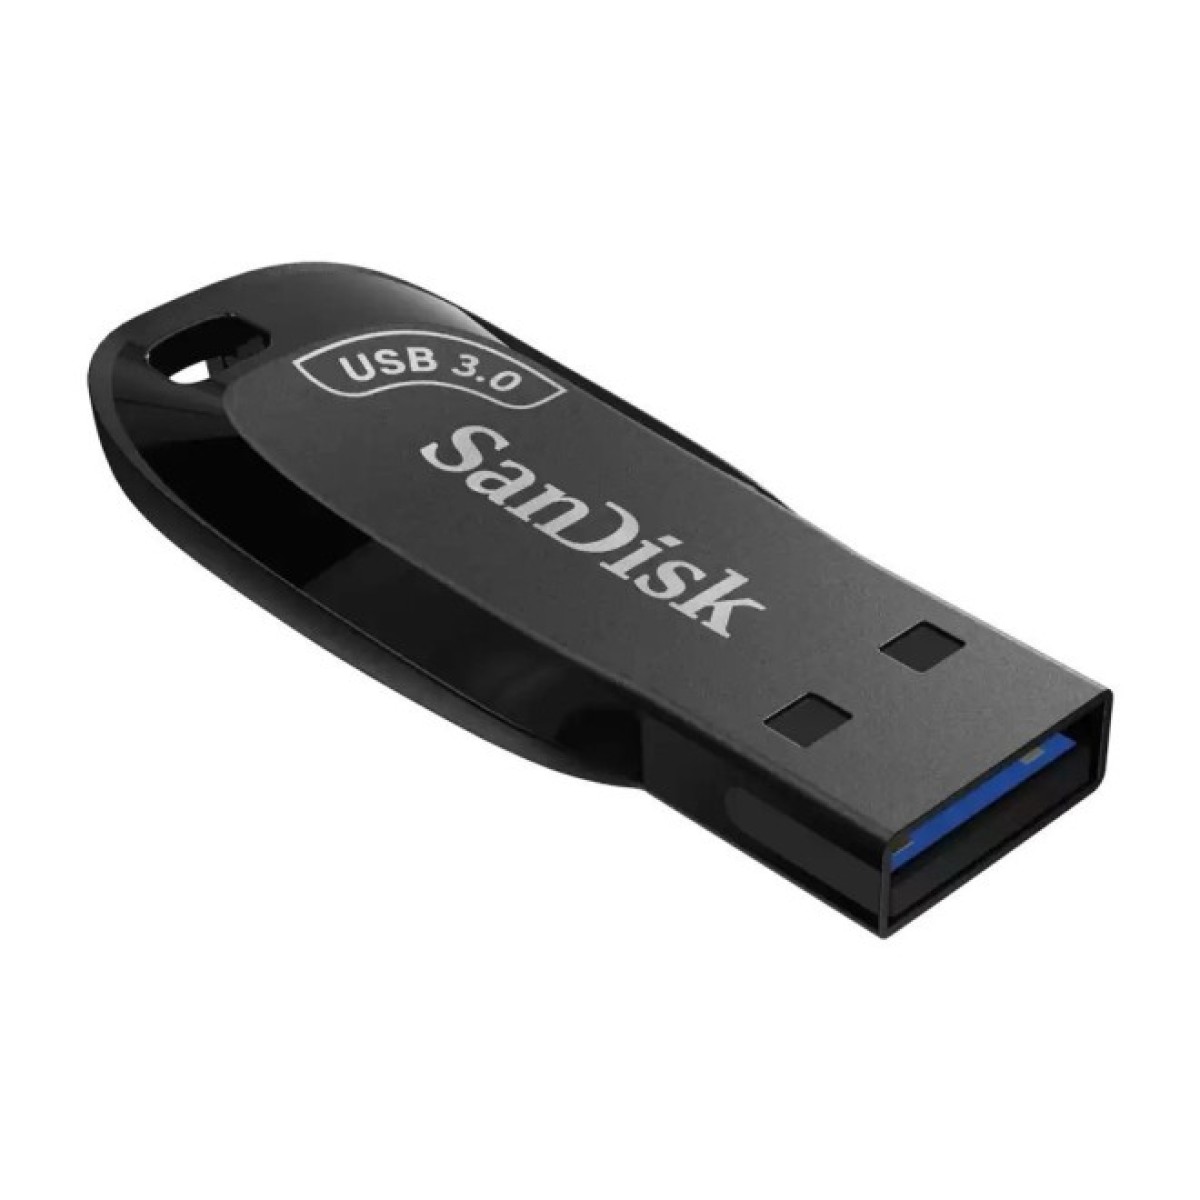 USB флеш накопитель SanDisk 32GB Ultra Shift USB 3.0 (SDCZ410-032G-G46) 256_256.jpg